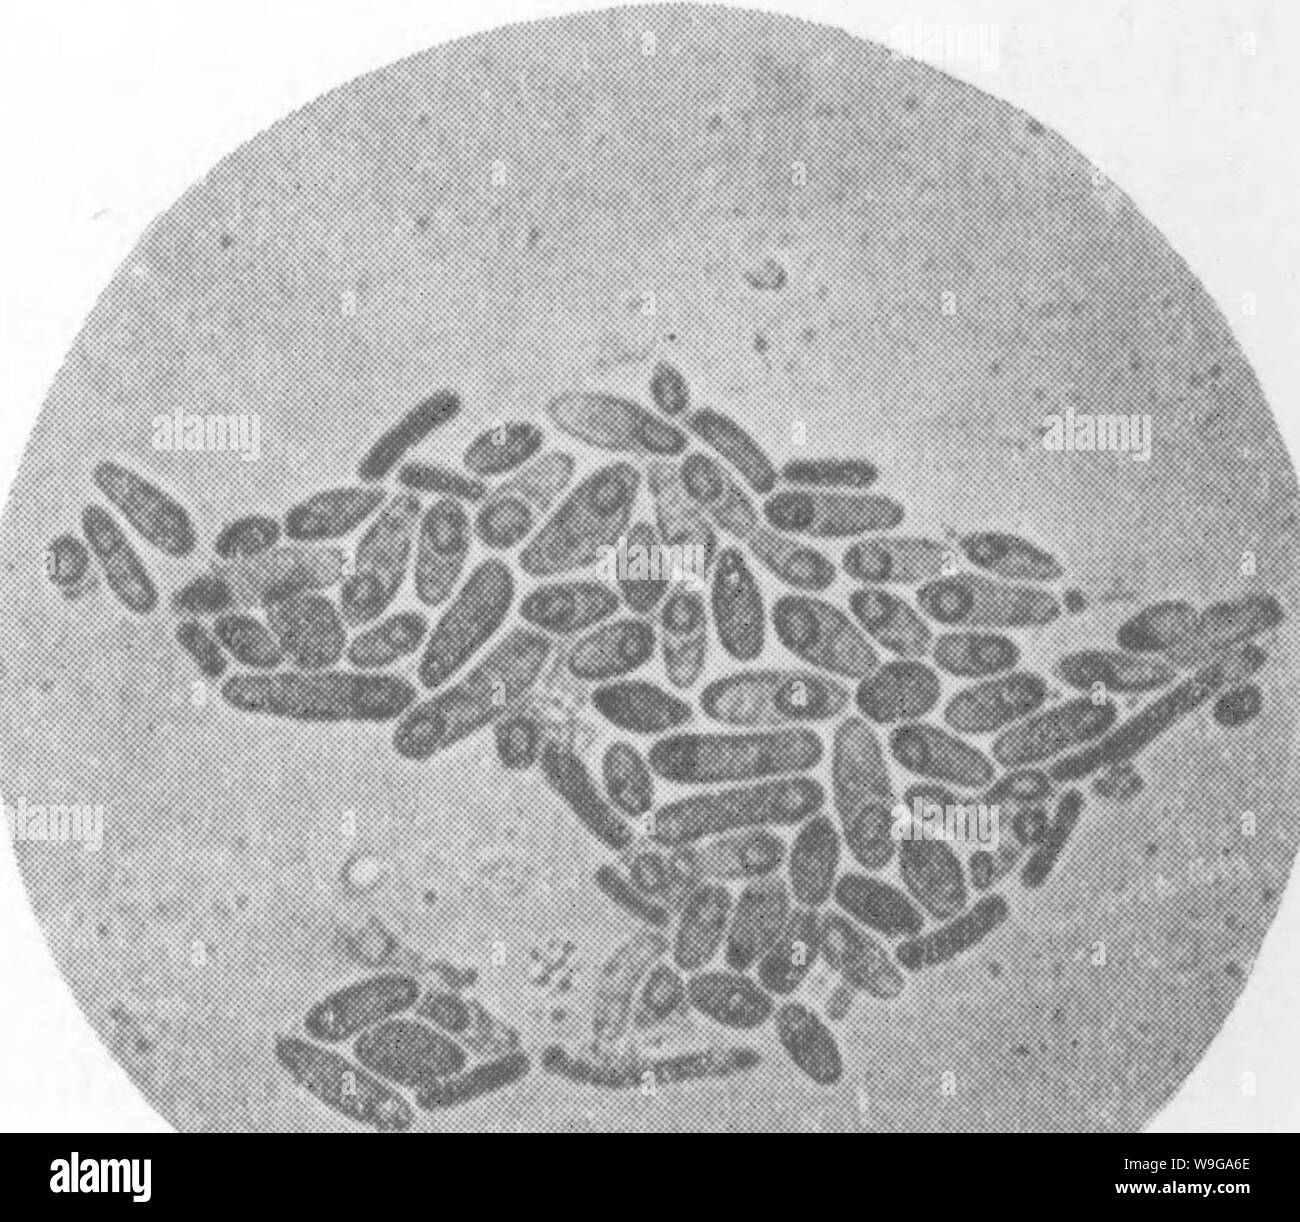 Image d'archive à partir de la page 159 de bactéries par rapport au sol Banque D'Images